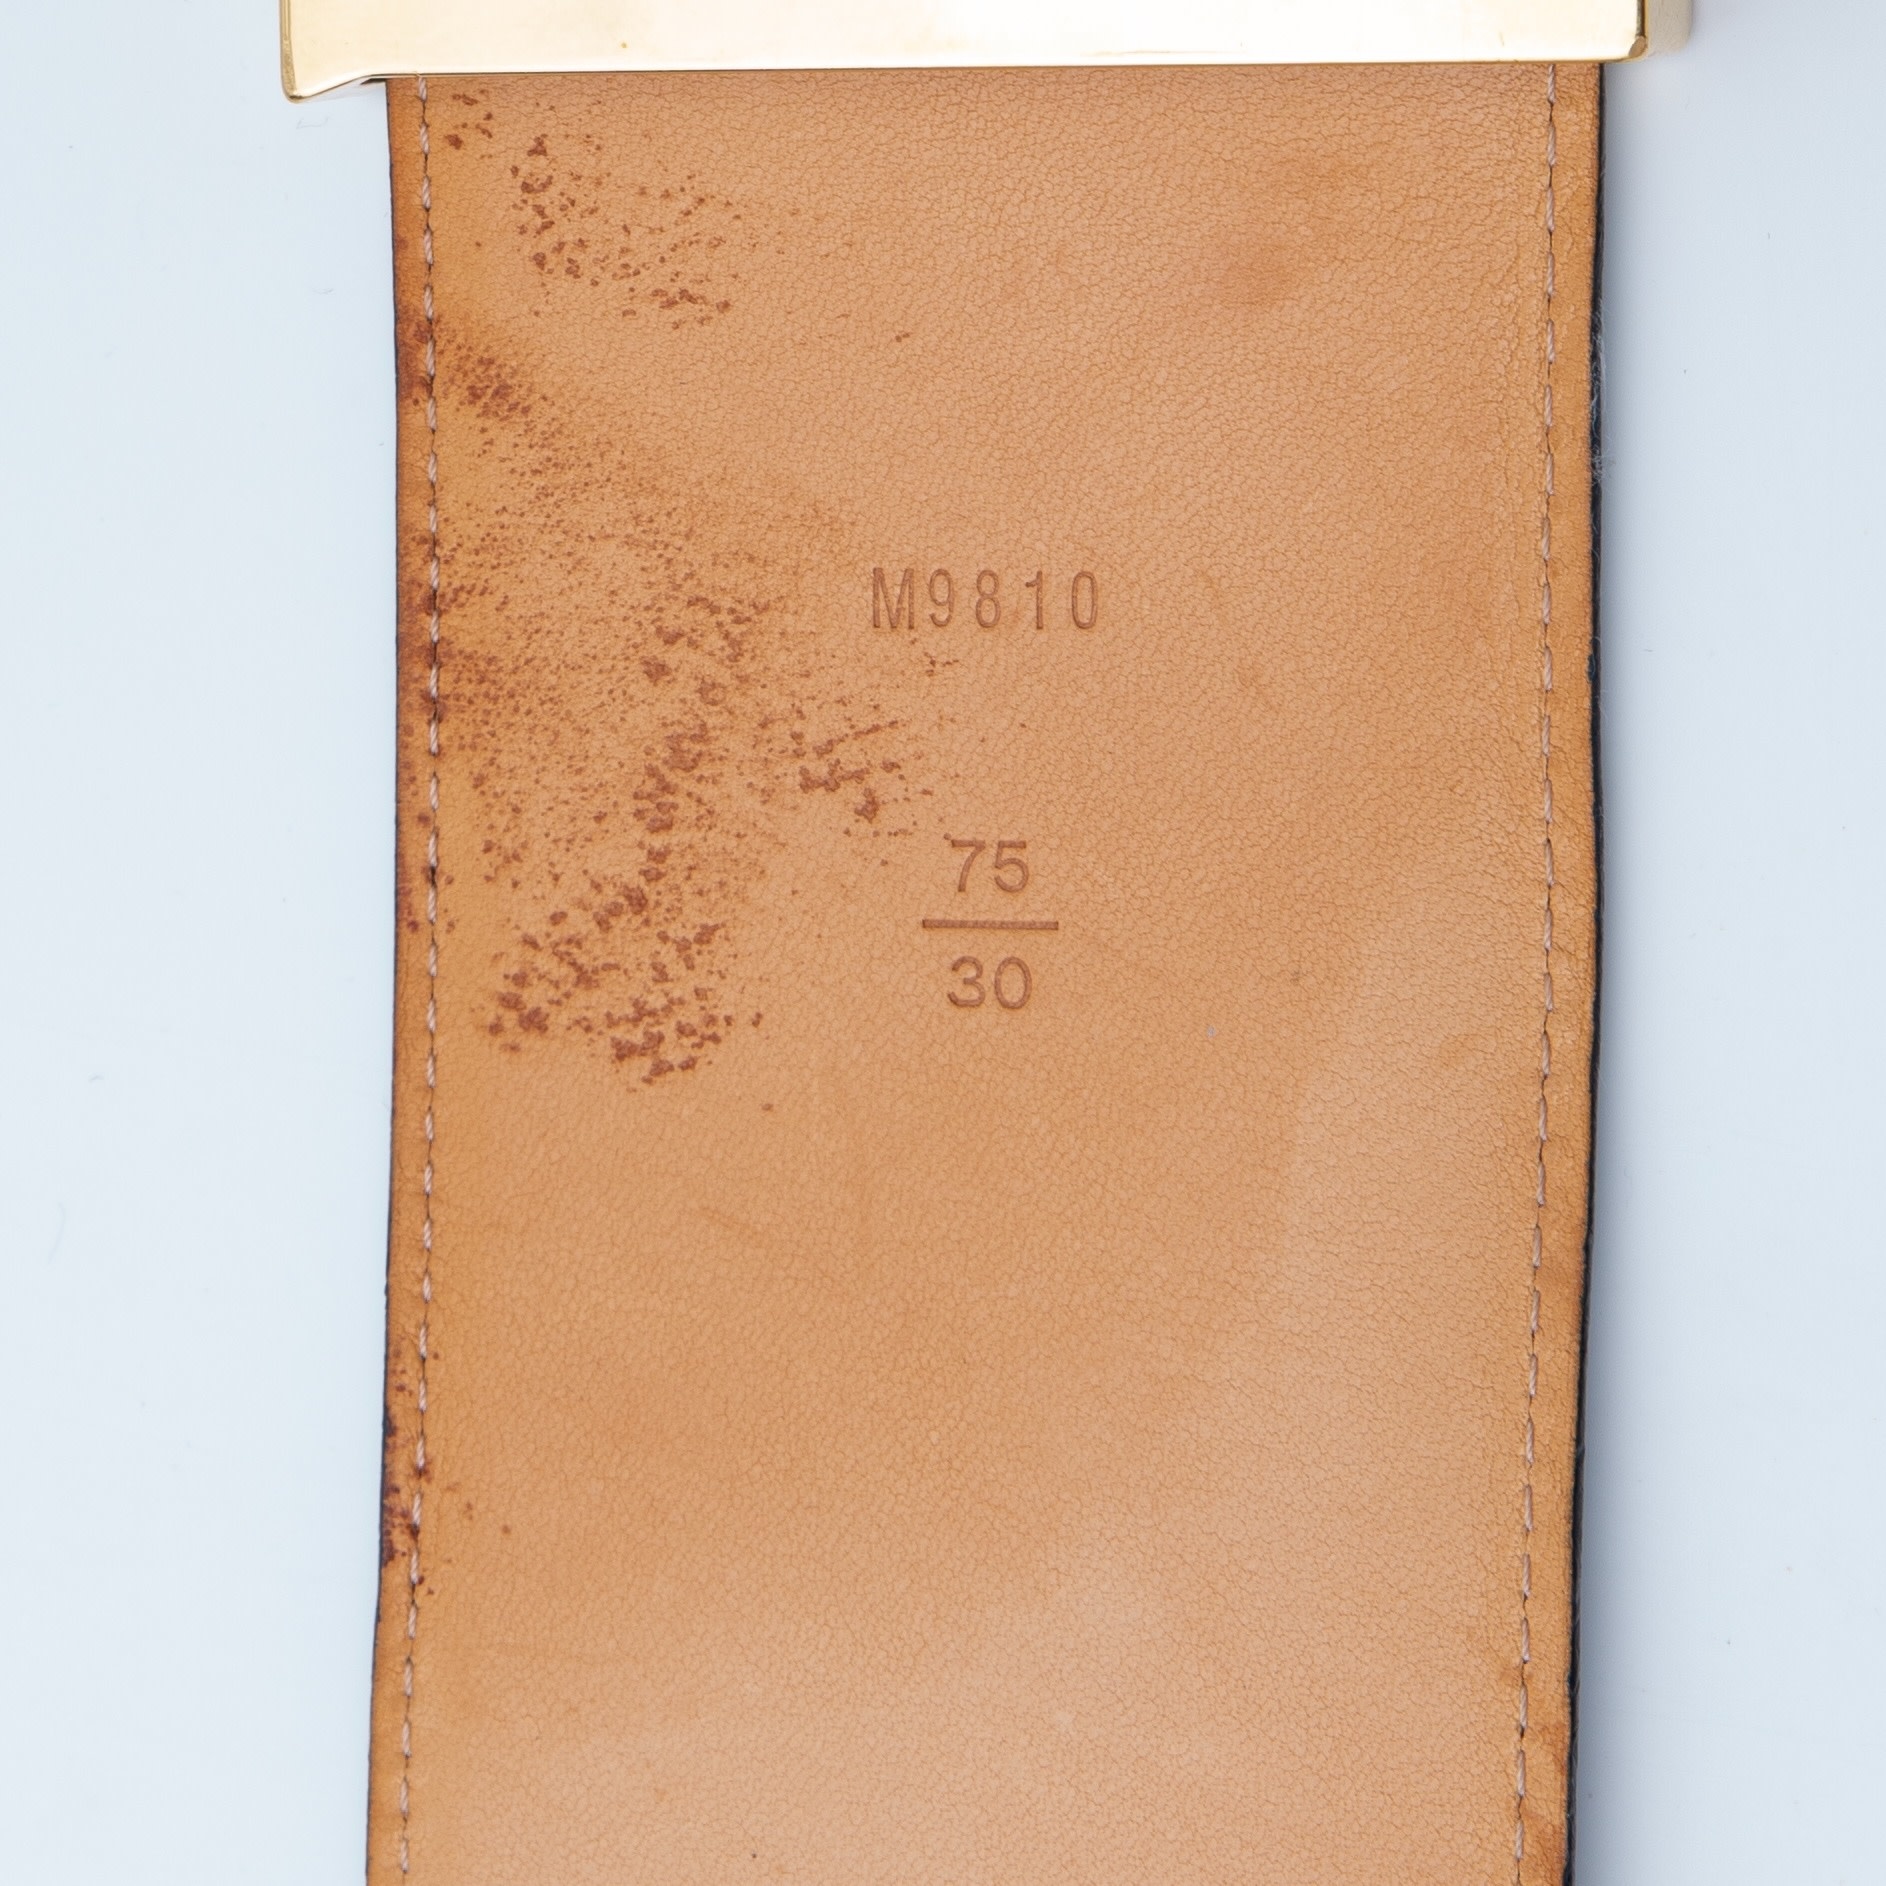 Louis Vuitton Charcoal Monogram Vernis Mat 18lv65 Belt